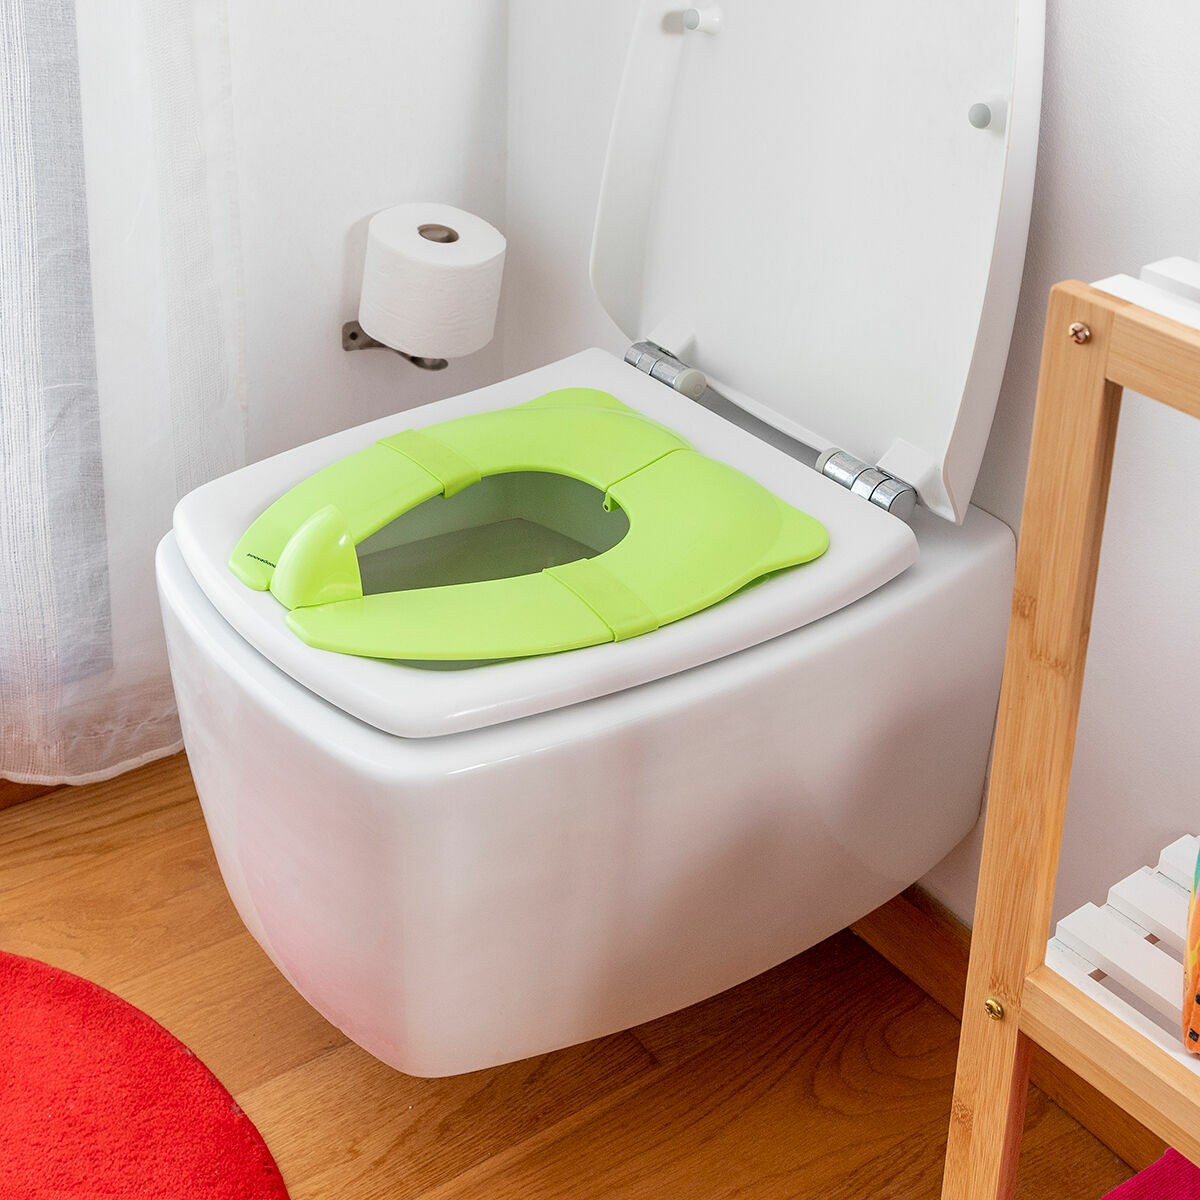 basisago Réducteur de toilette pour enfants, siège de toilette pliable pour  bébé, coussin doux interchangeable, protection anti-éclaboussures, design